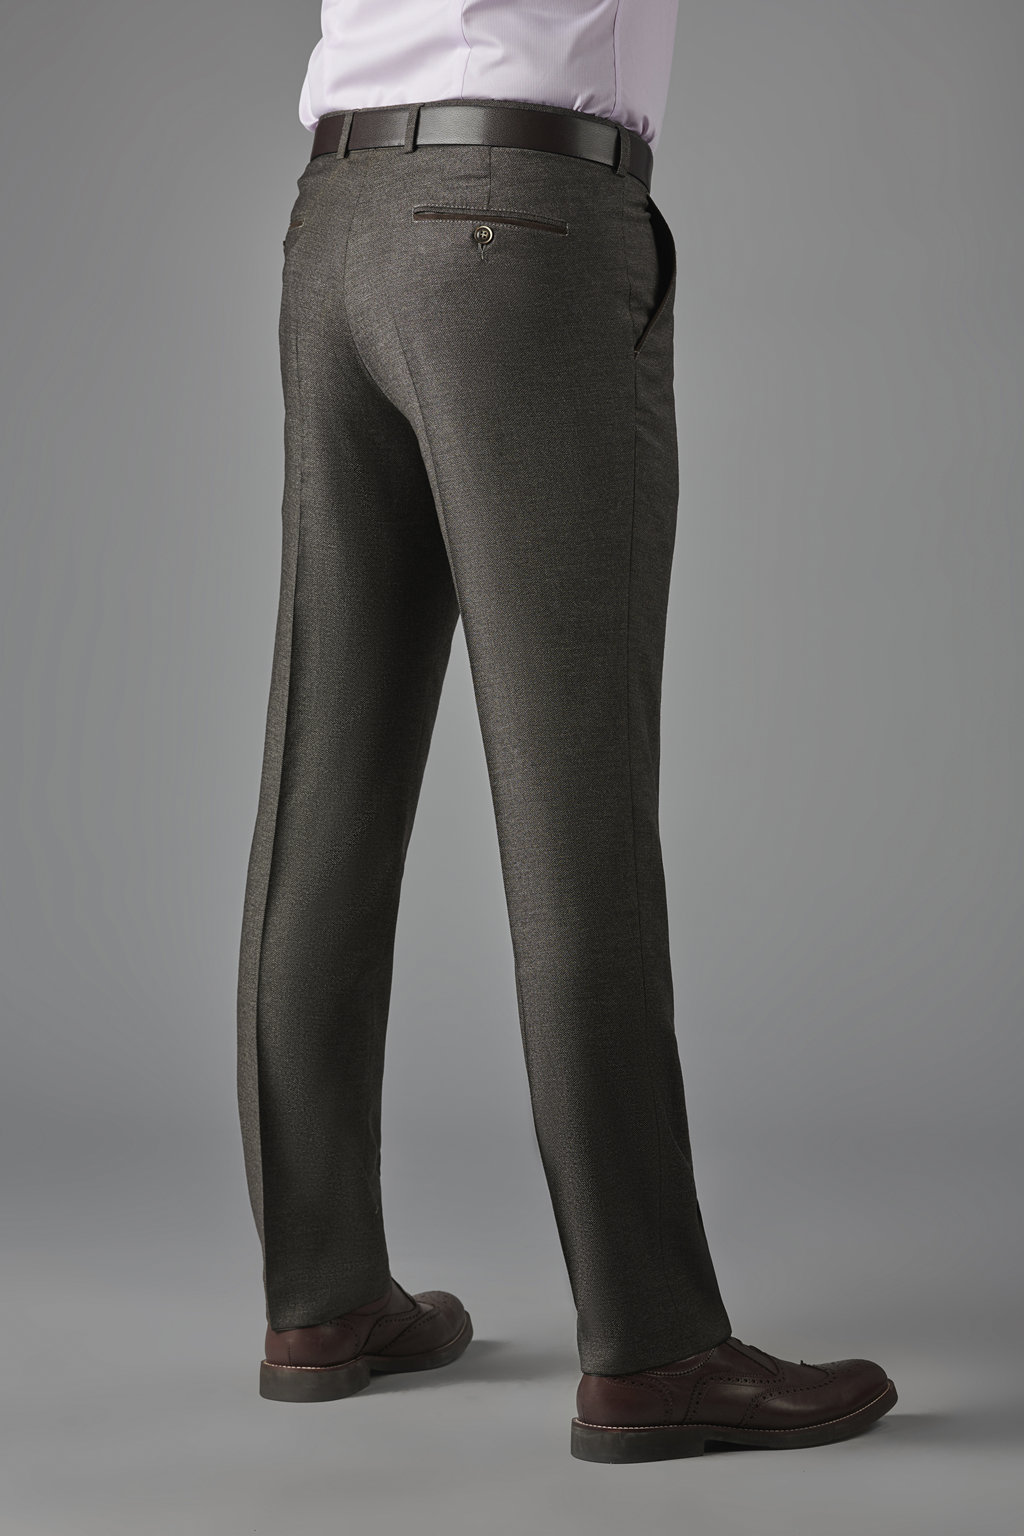 Коричневые брюки из итальянской шерстяной ткани Zignone Slim Fit